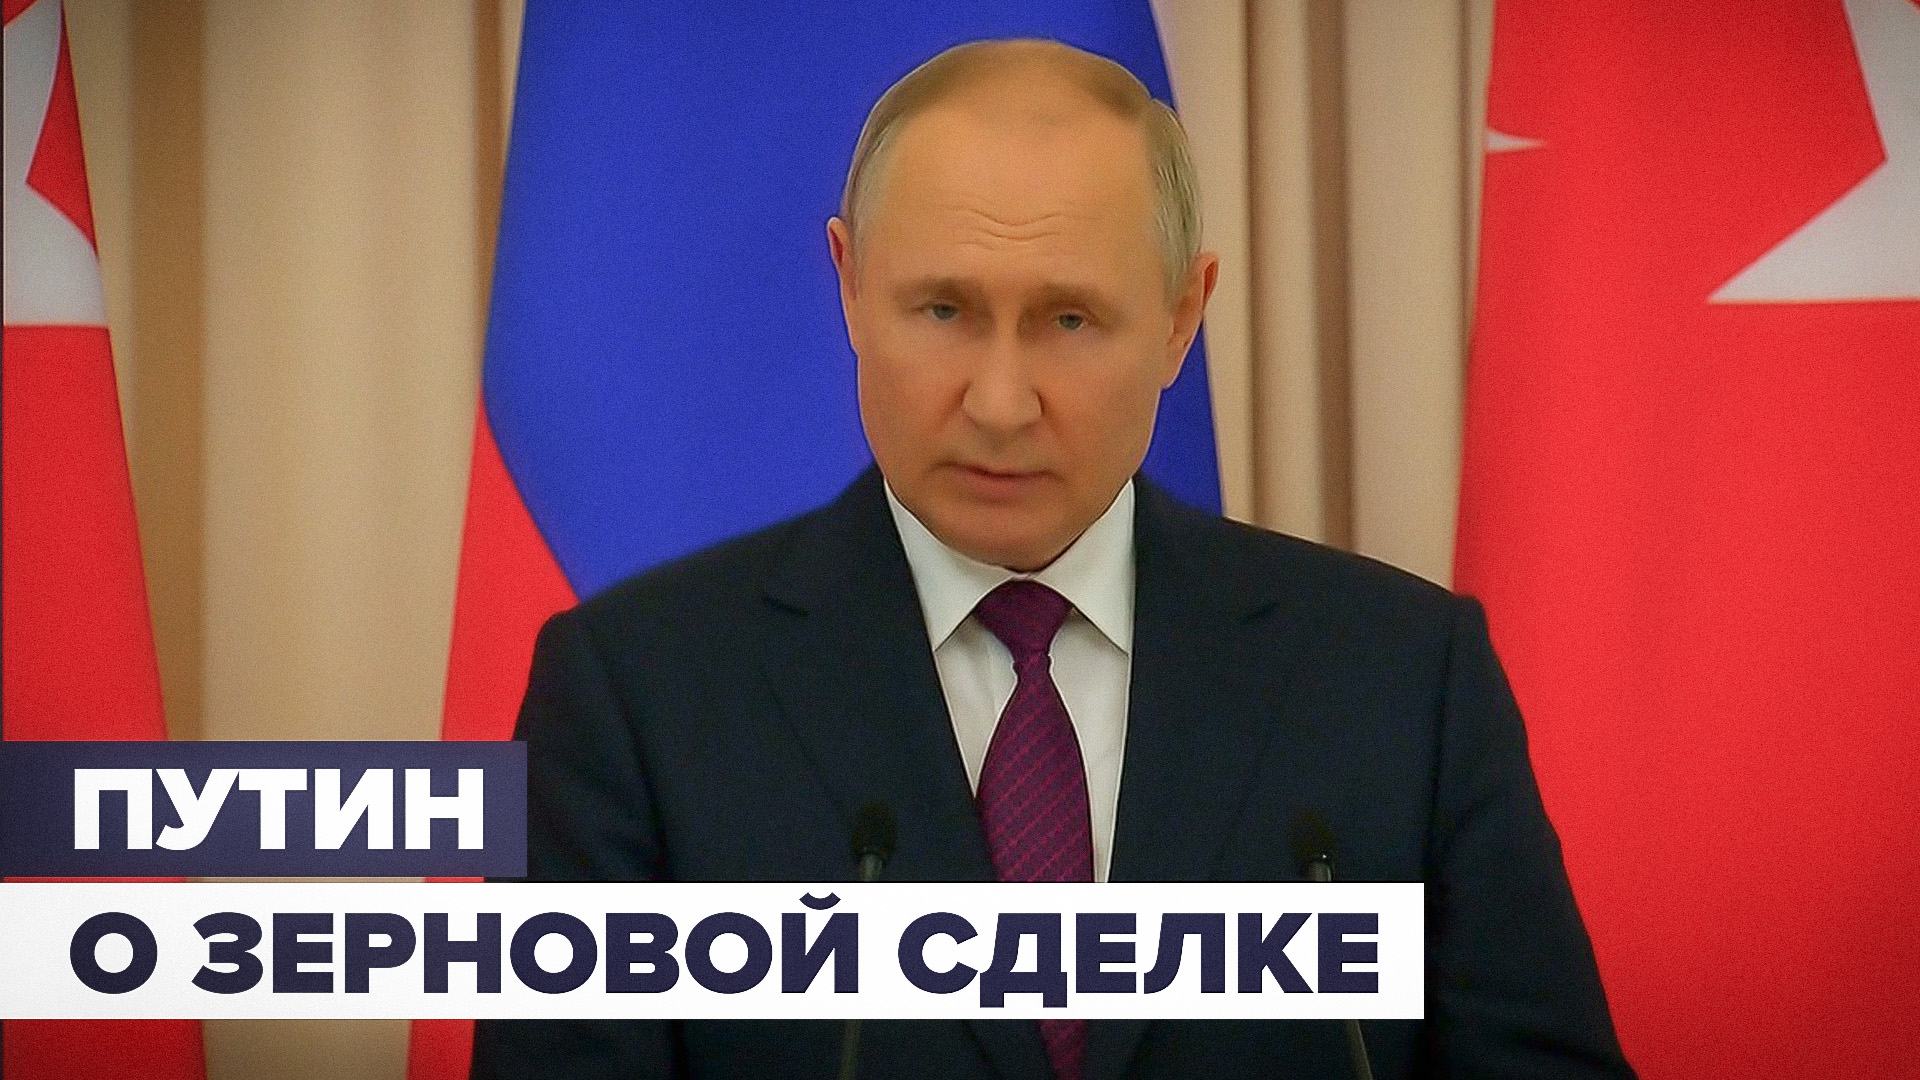 Путин заявил о готовности реанимировать зерновую сделку после выполнения её условий